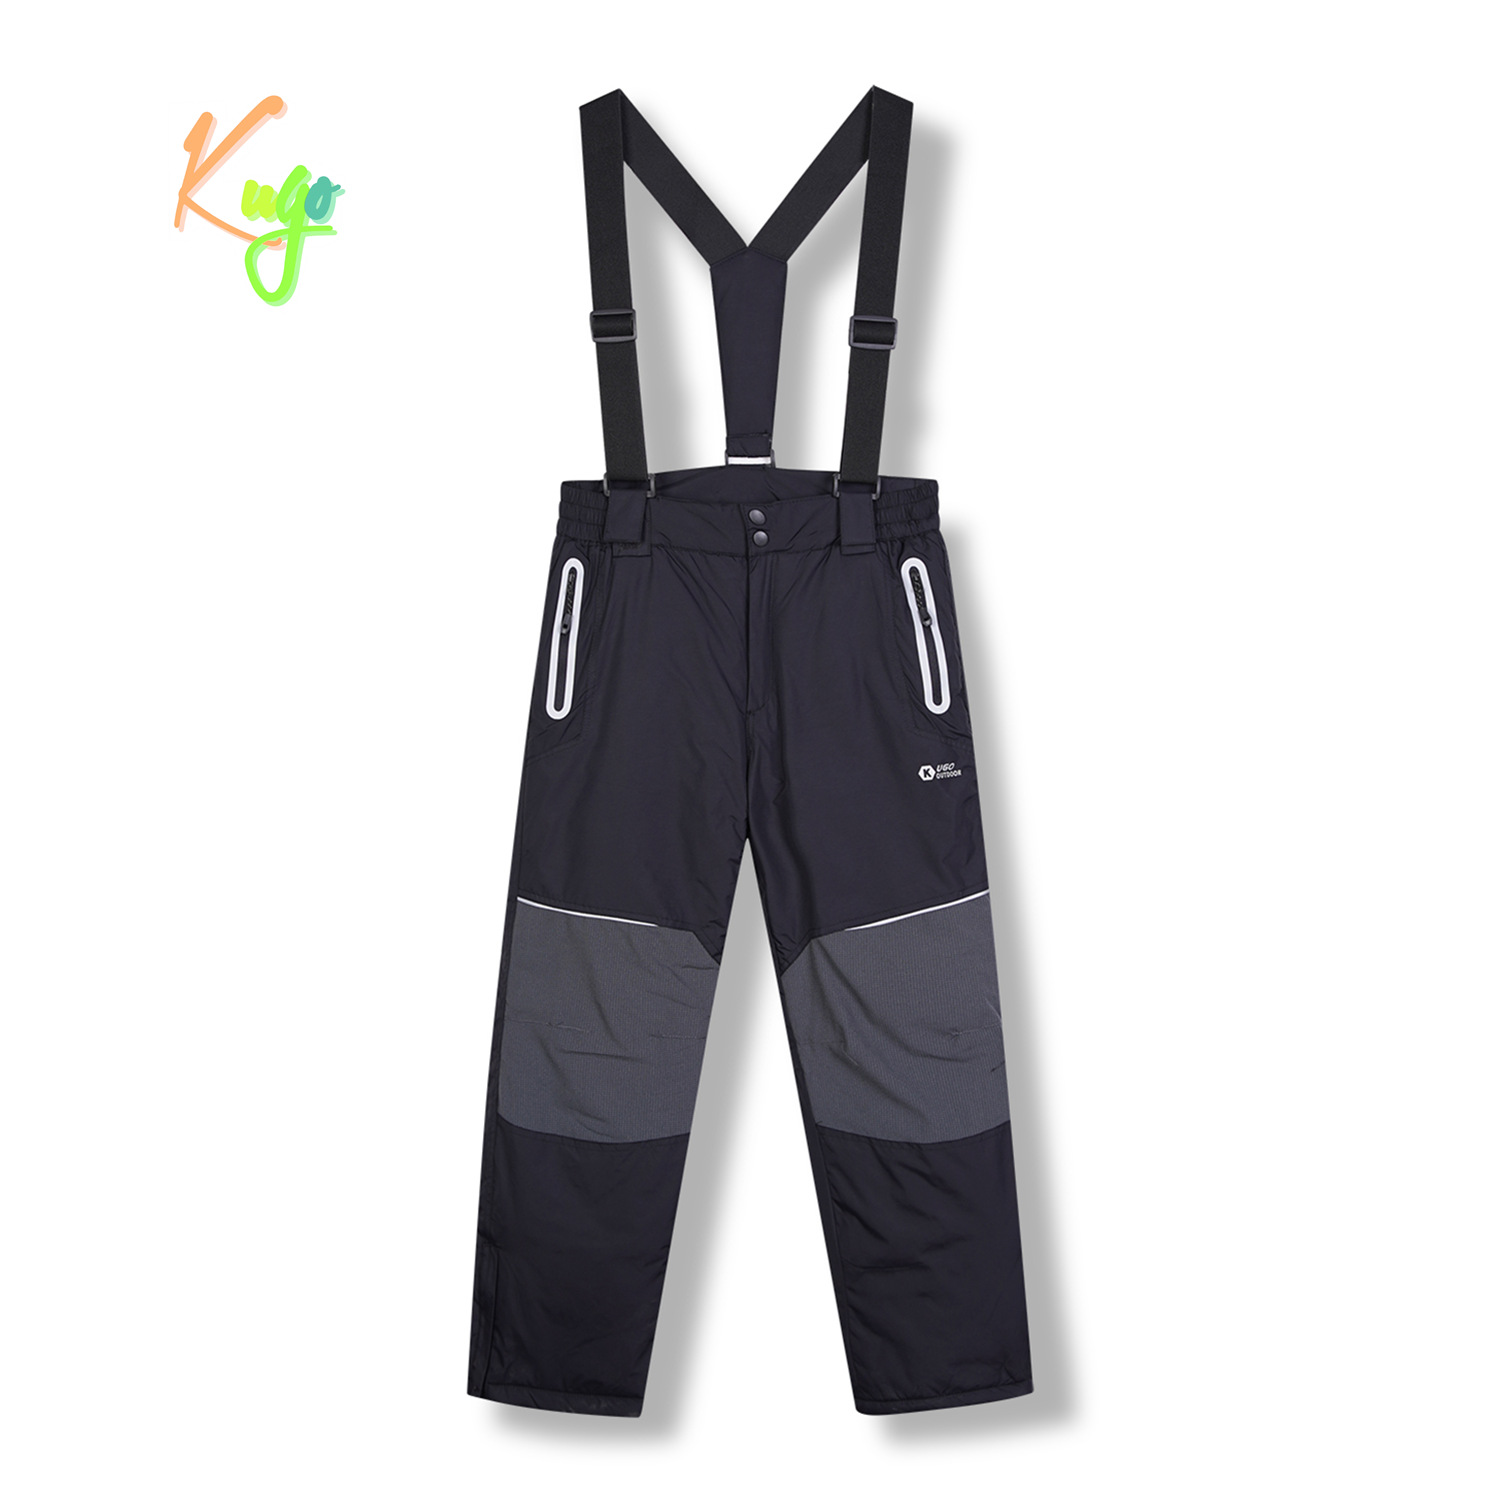 Chlapecké lyžařské kalhoty - KUGO DK8231, černá / černé zipy Barva: Černá, Velikost: 134